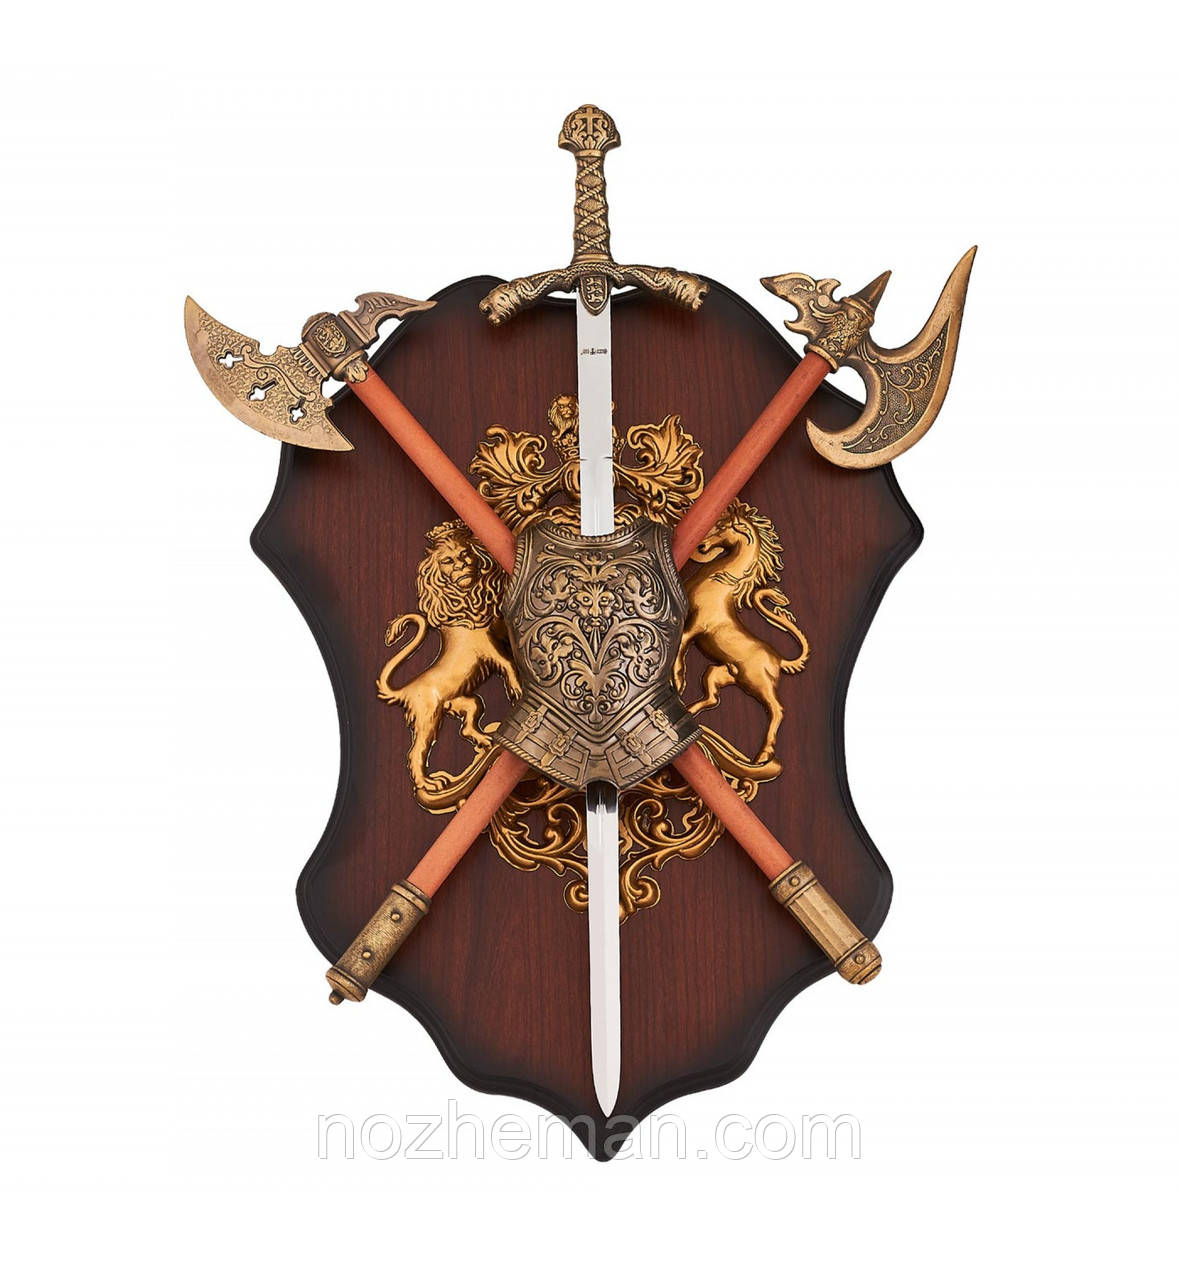 Подарункове лицарське Панно 2, настінне прикраса в середньовічному стилі, відмінний подарунок чоловікові